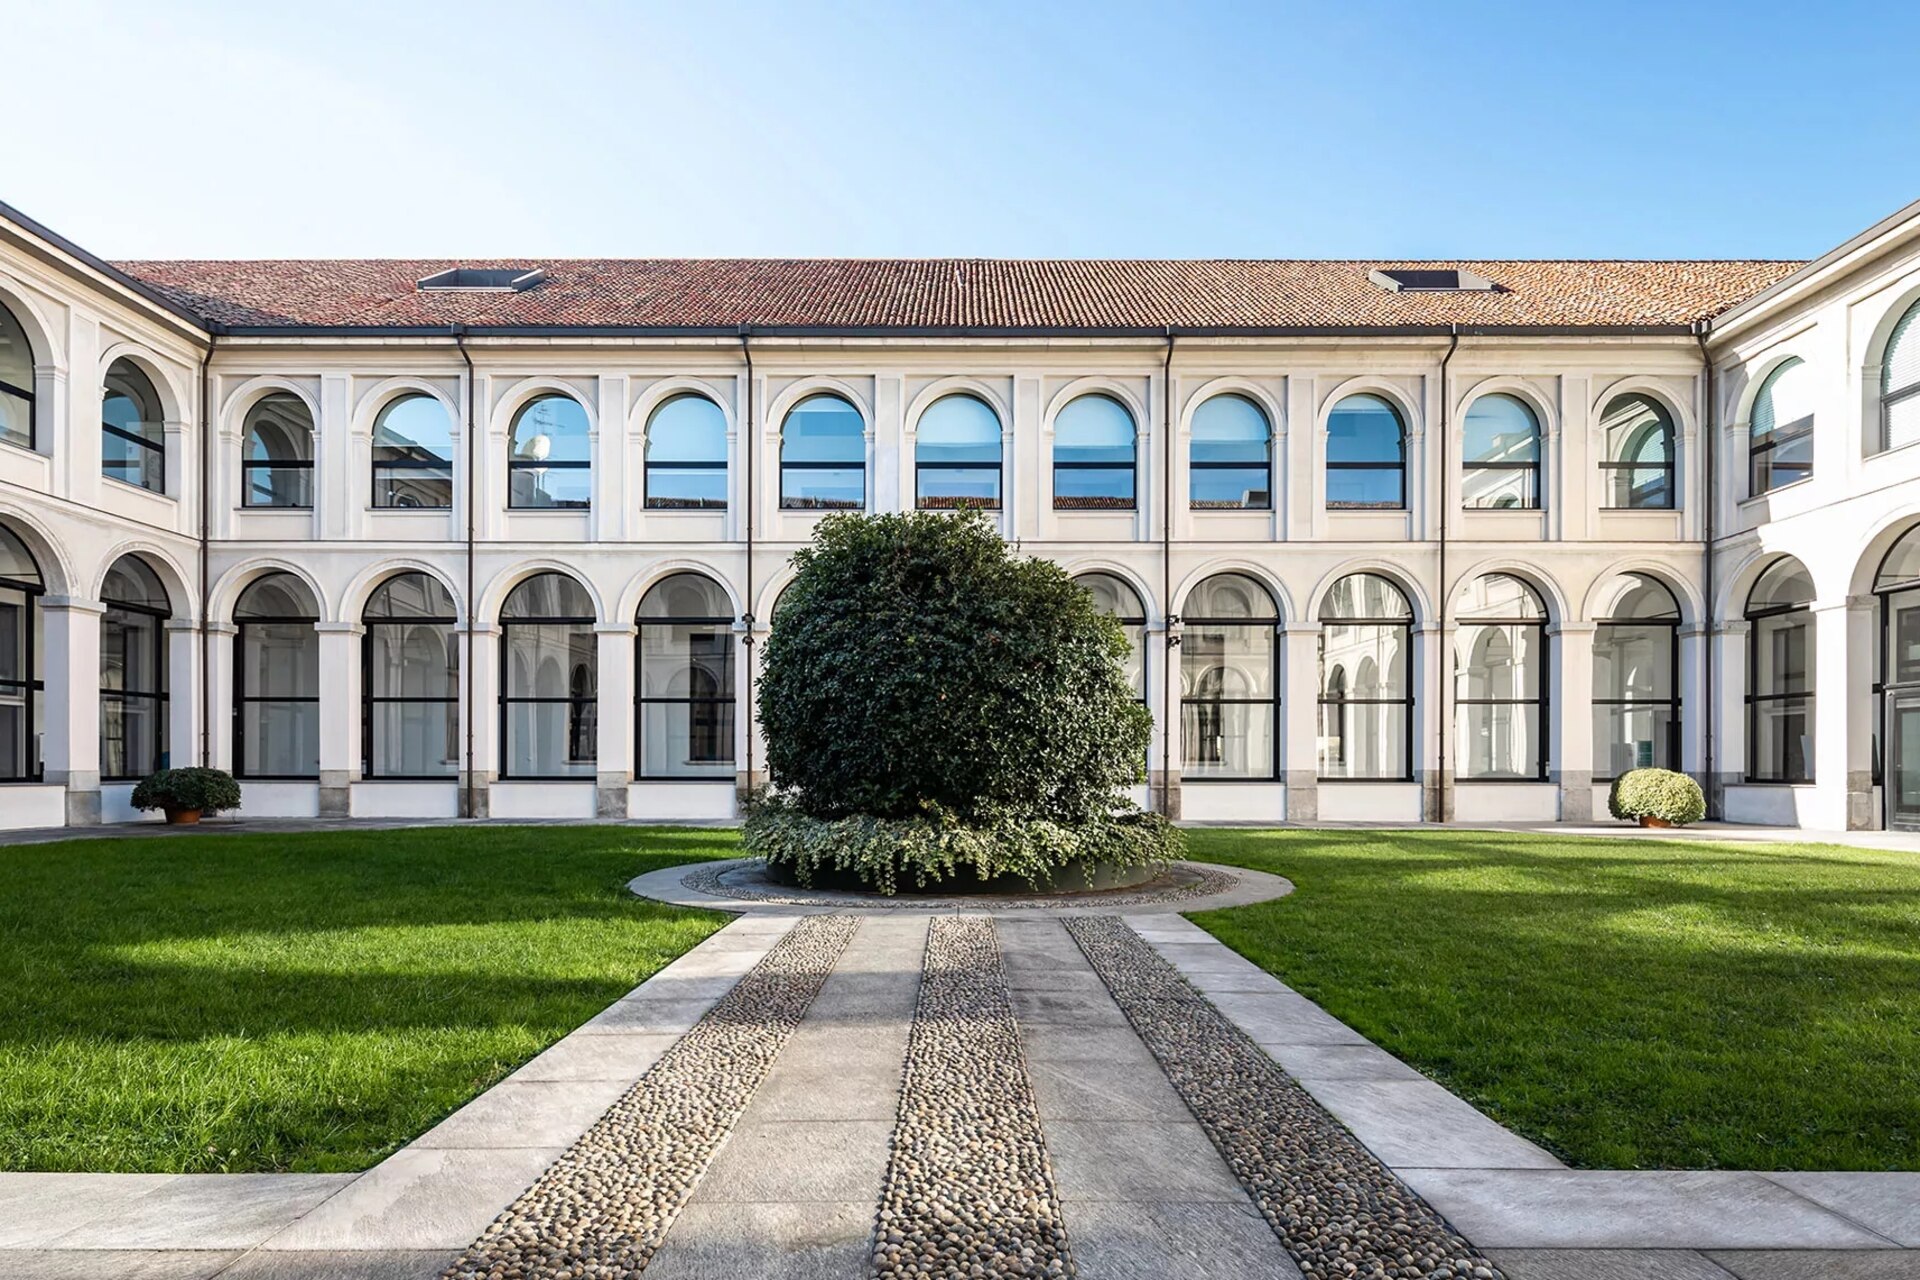 Метафорум: Палаццо делле Стеллине, расположенный в самом сердце Милана рядом со знаменитой церковью Санта-Мария-делле-Грацие, станет зеленой площадкой для проведения Метафорума 2023 года.